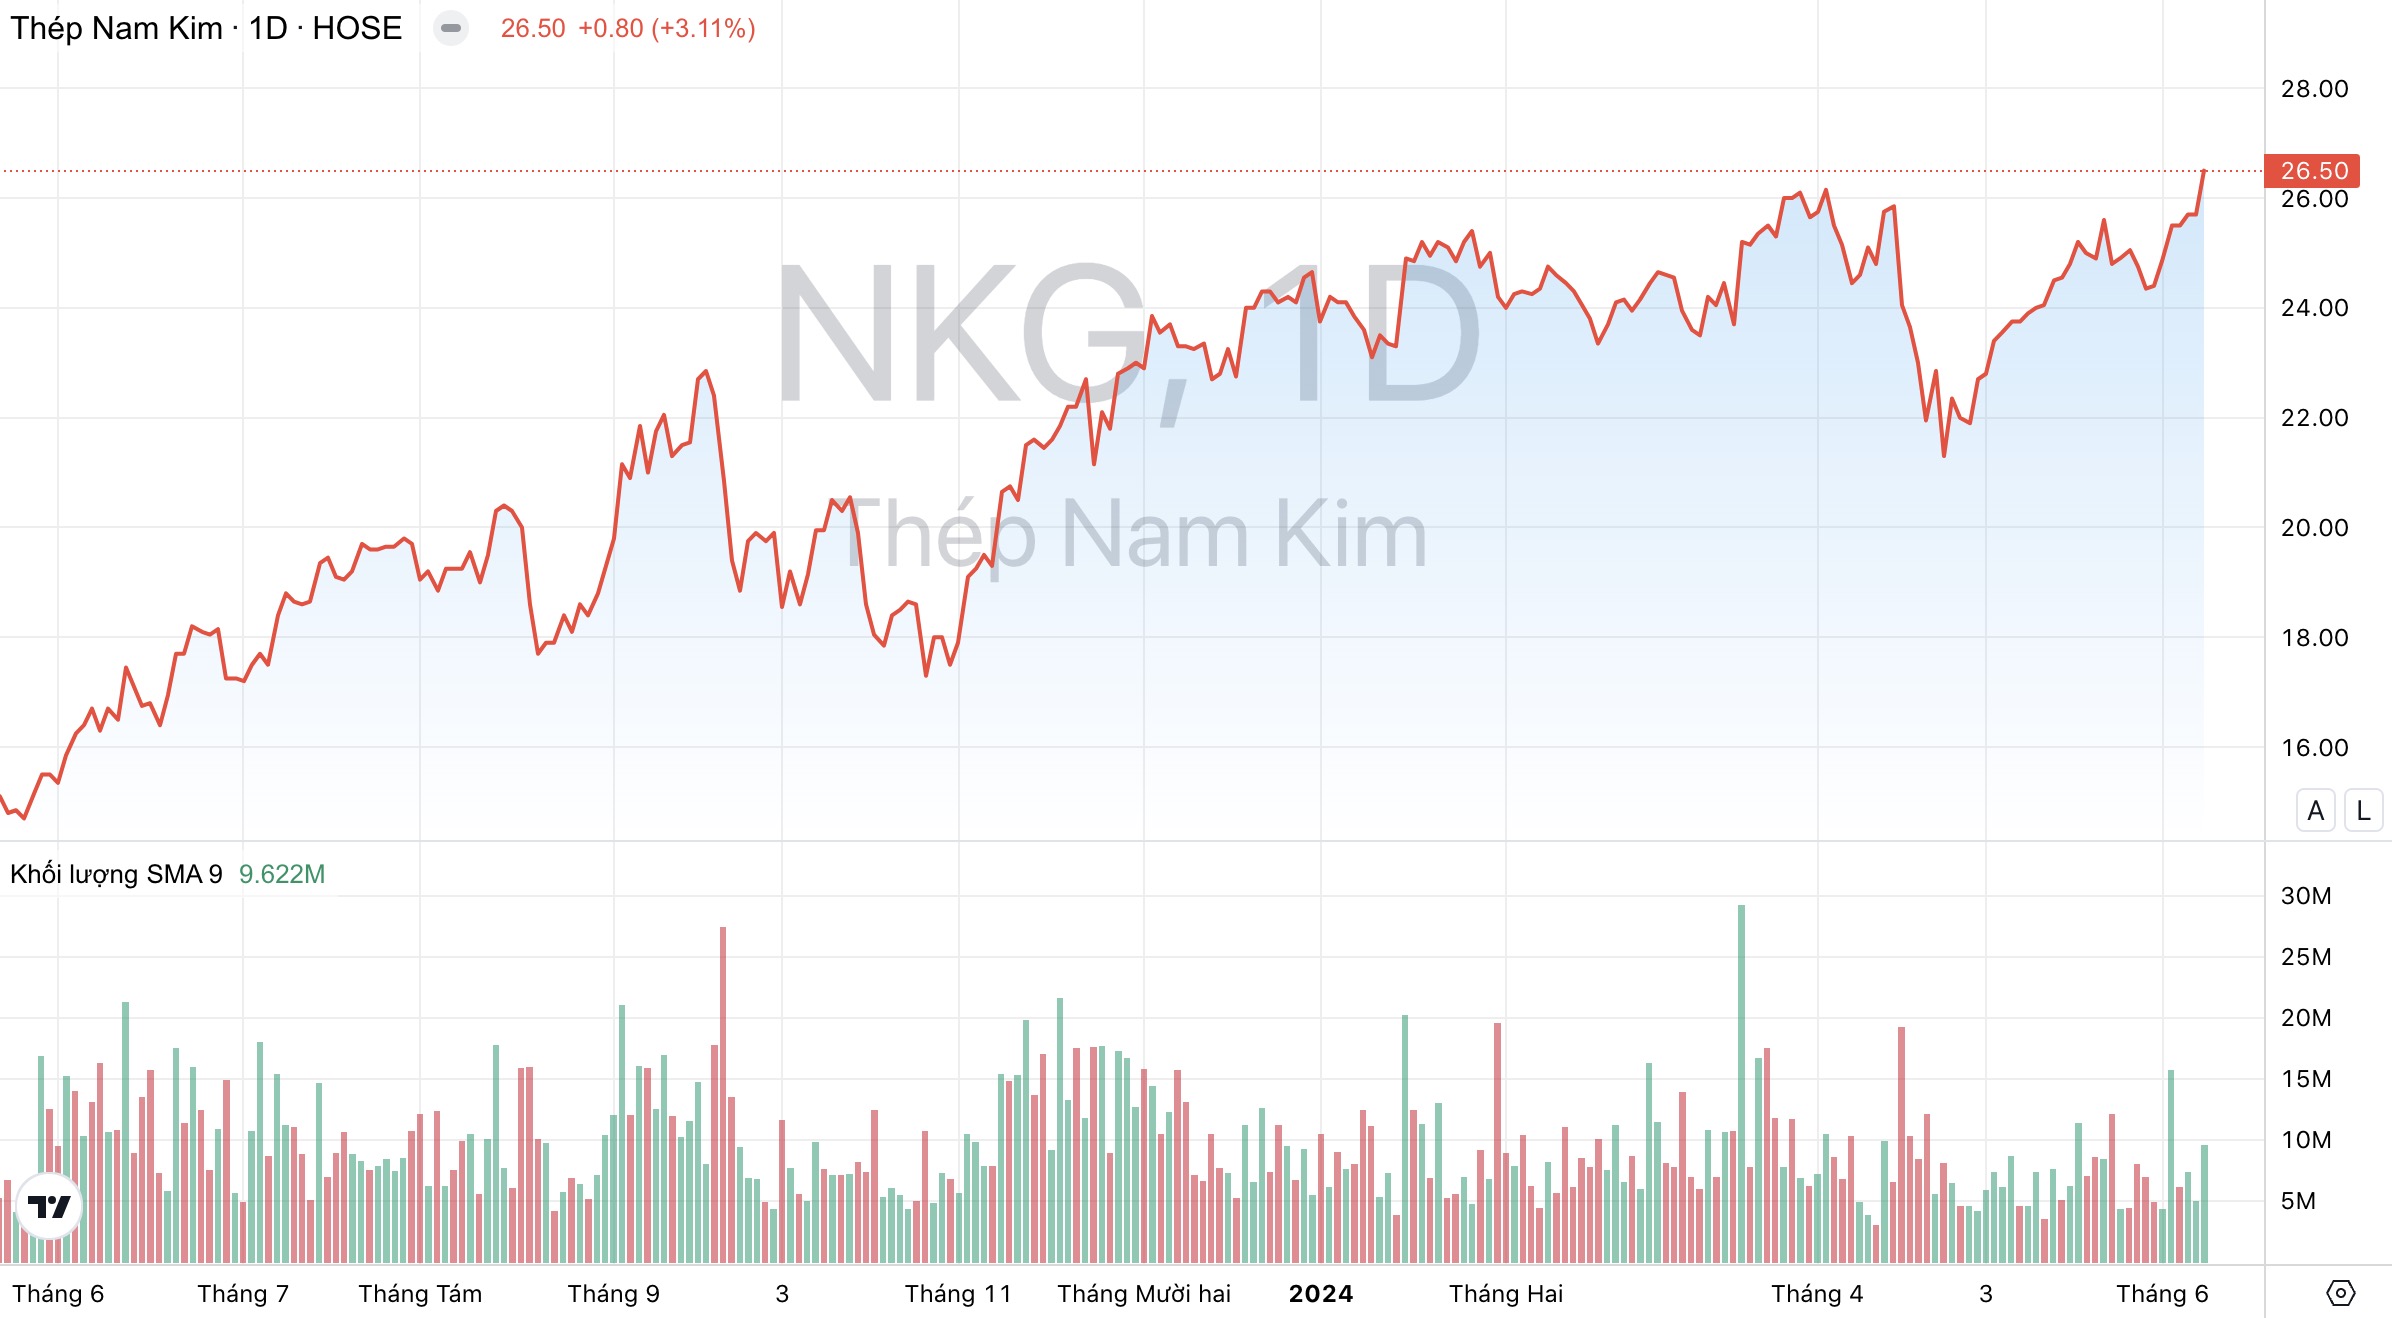 Giá cổ phiếu NKG Thép Nam Kim